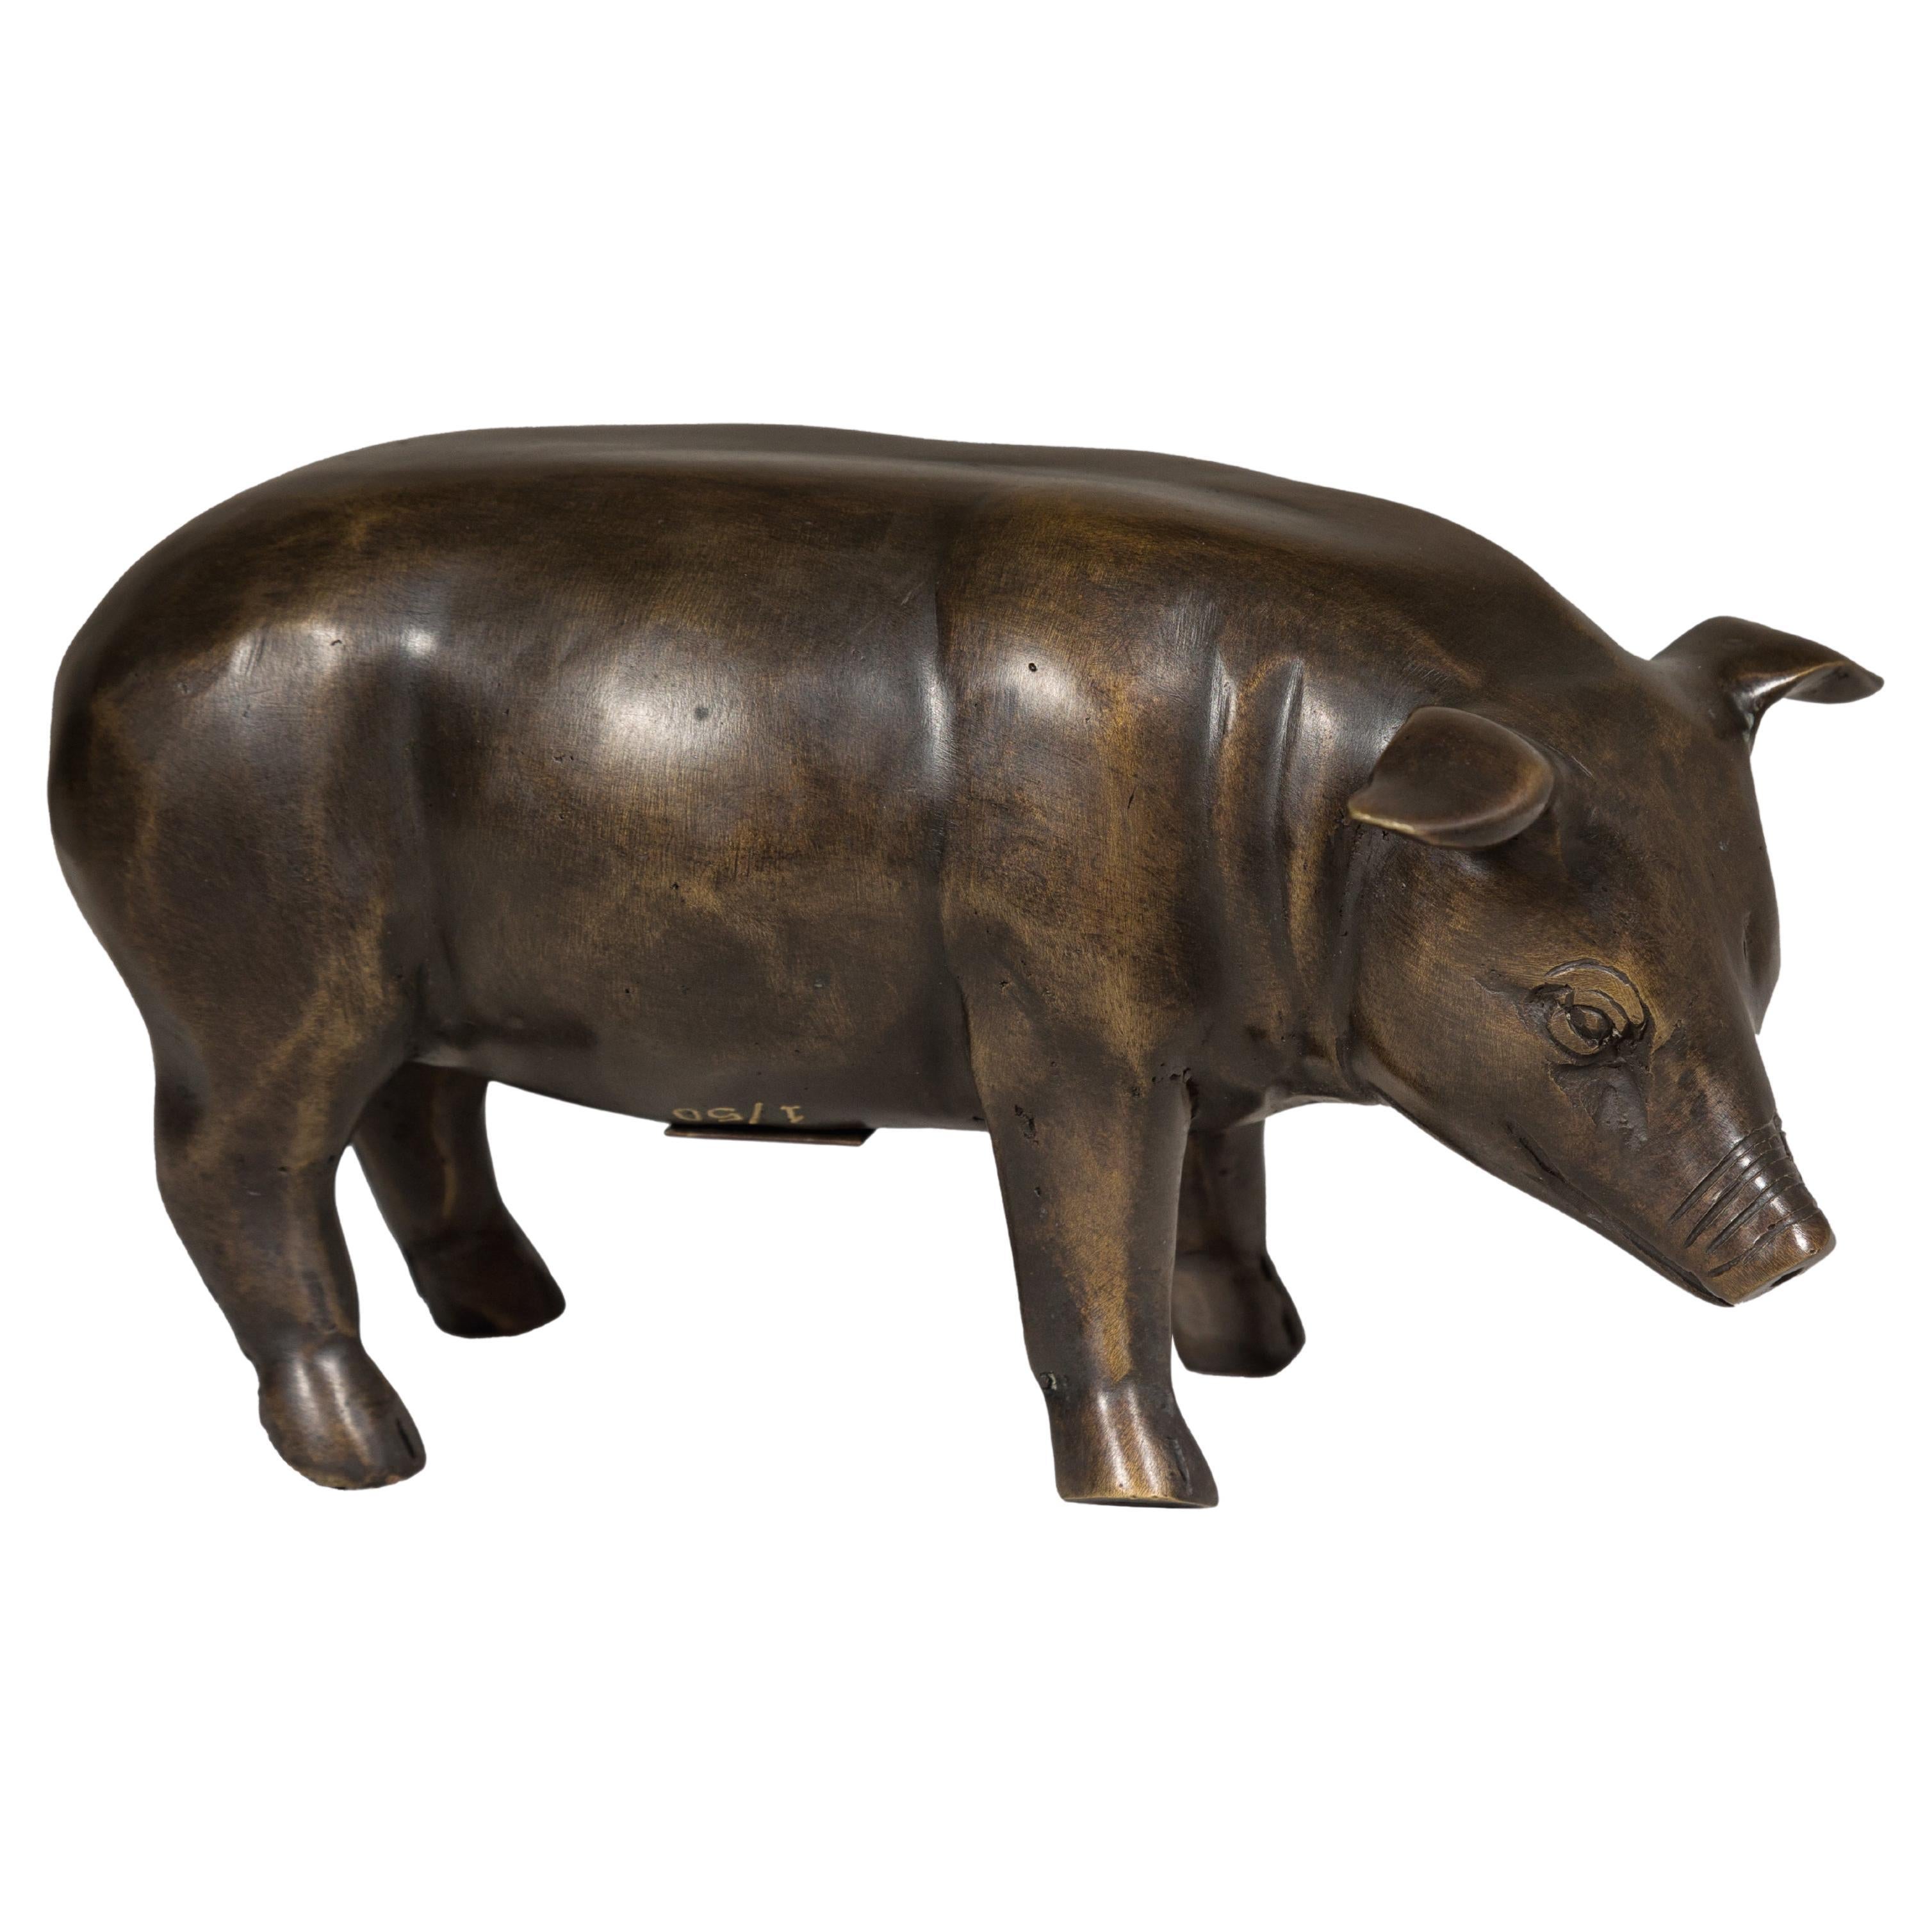 Statuette de porc en bronze de la collection Randolph Rose en édition limitée